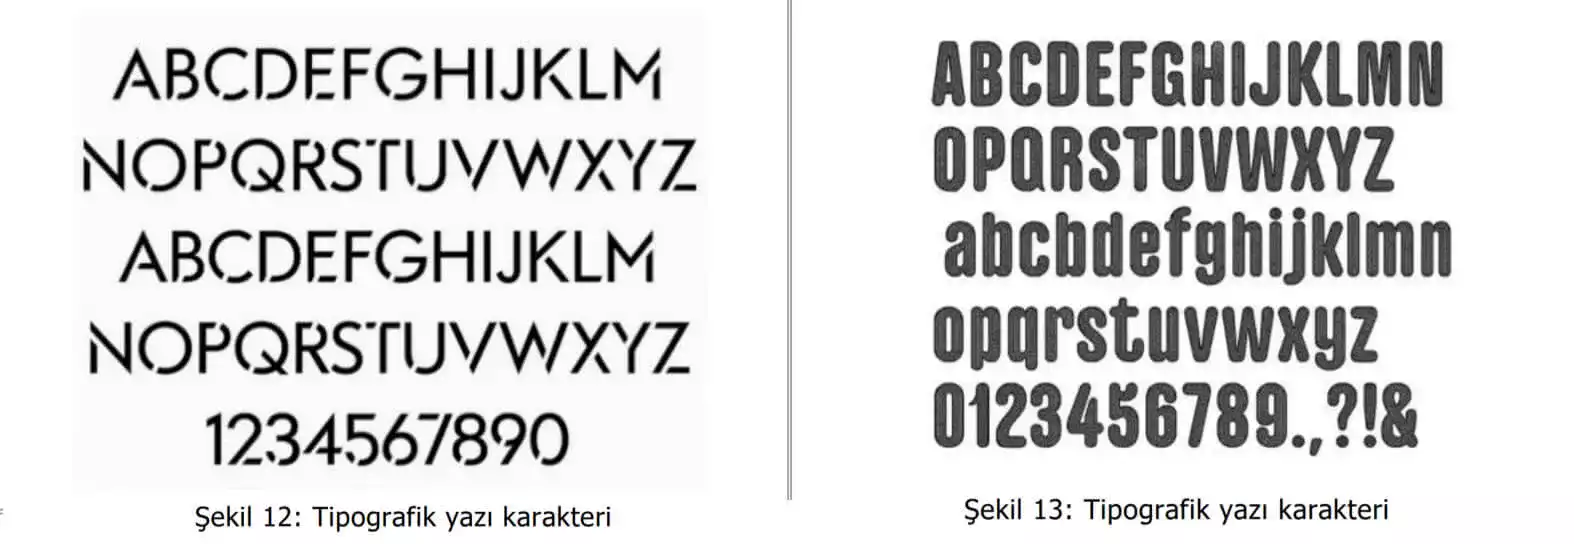 tipografik yazı karakter örnekleri-Maltepe Patent